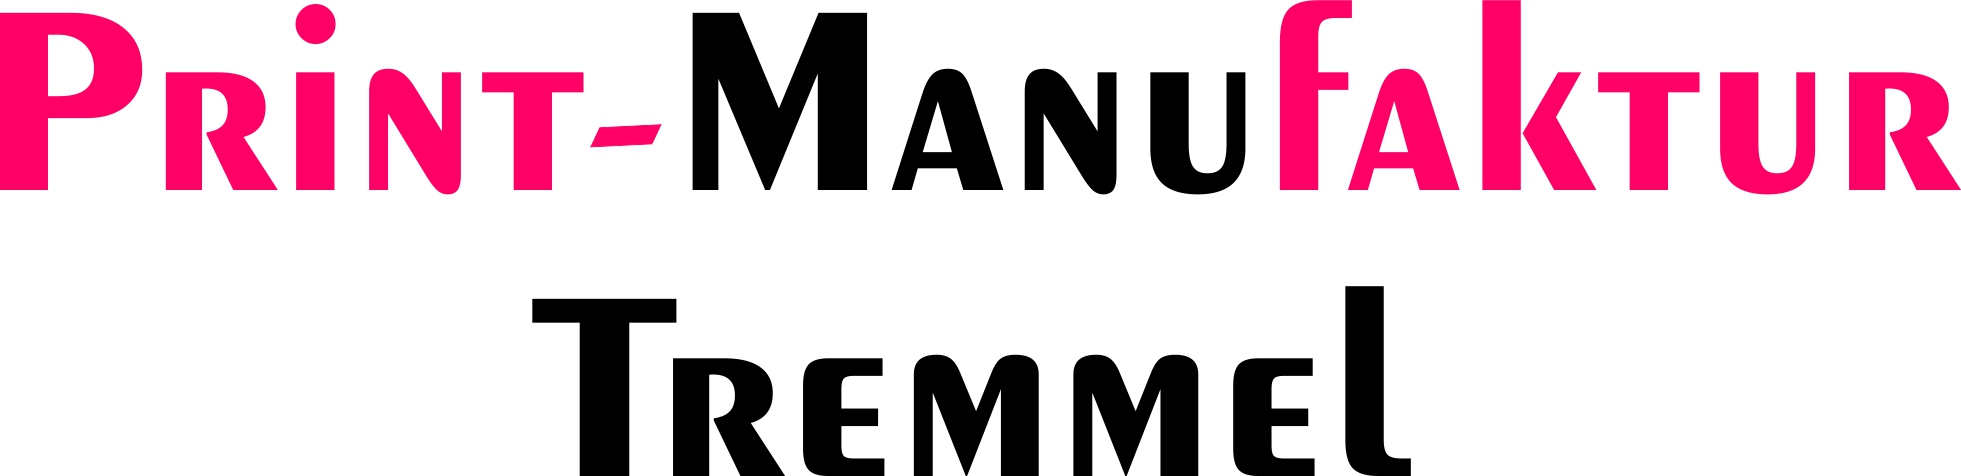 (c) Print-manufaktur-tremmel.com